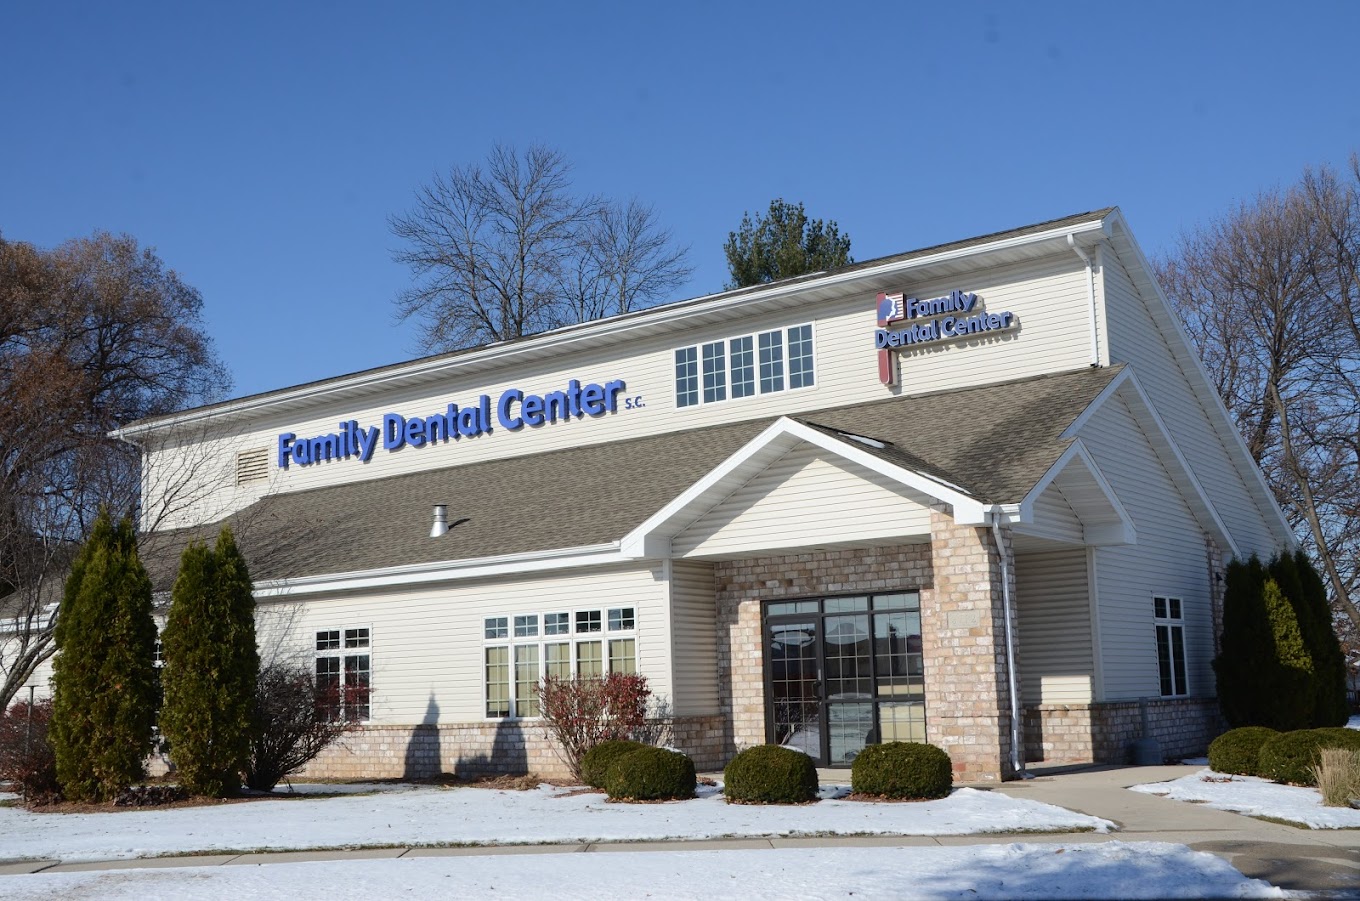 Family Dental Center SC